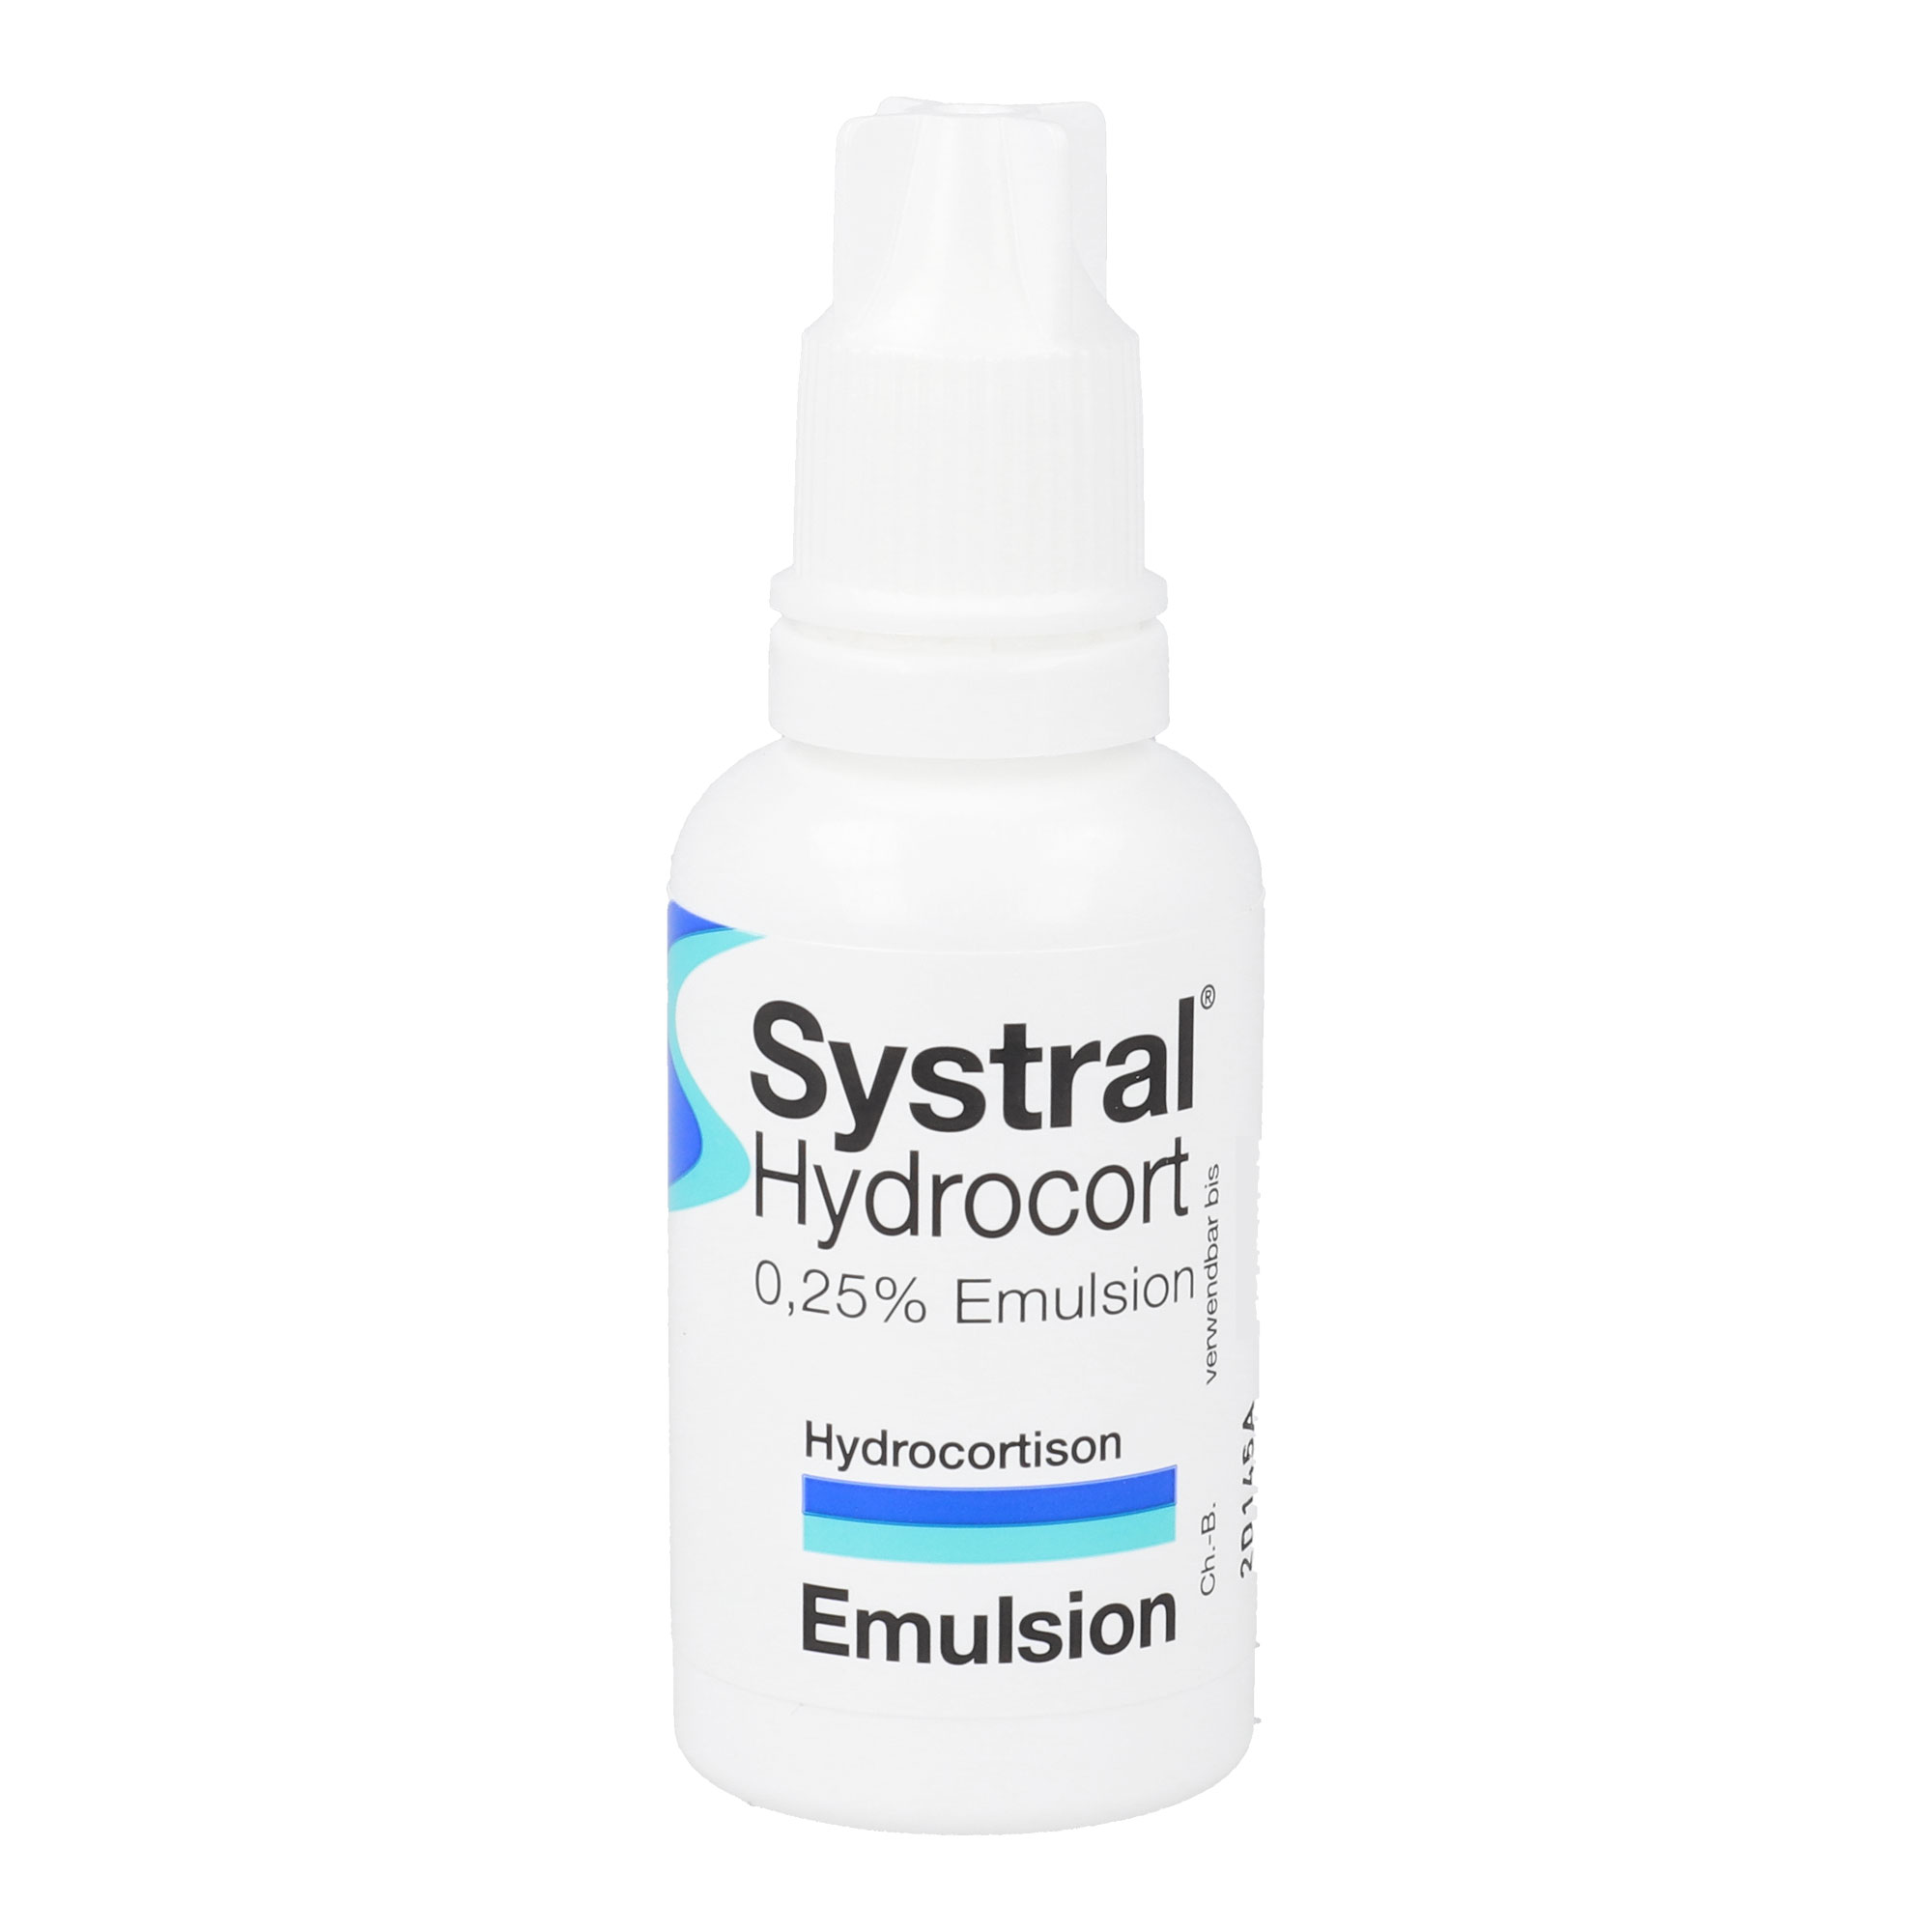 Hydrocortisonhaltige Emulsion zur Linderung sehr schwach ausgeprägter, entzündlicher oder allergischer Hautkrankheiten. Ab 6 Jahren geeignet.